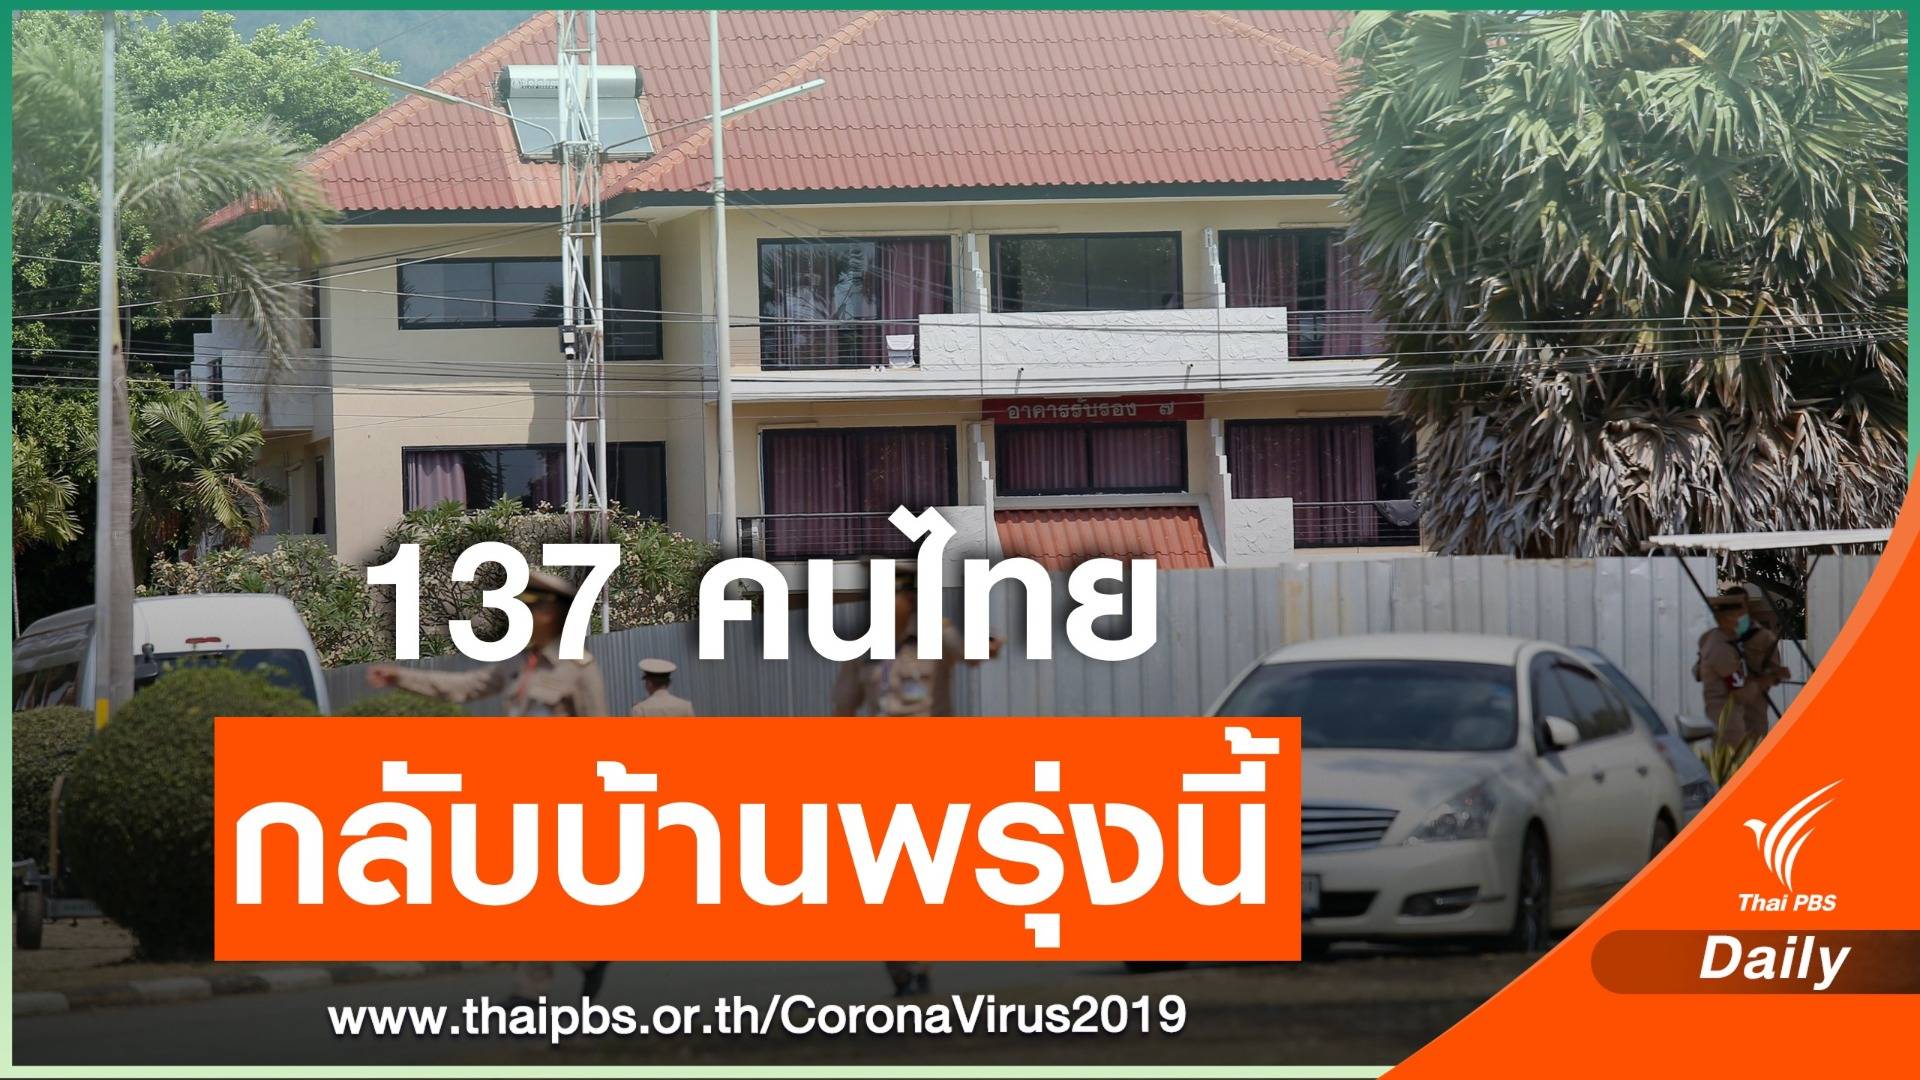  137 คนไทยจากอู่ฮั่นกลับบ้านได้ 1 คน ยังตรวจพบเชื้อ COVID-19